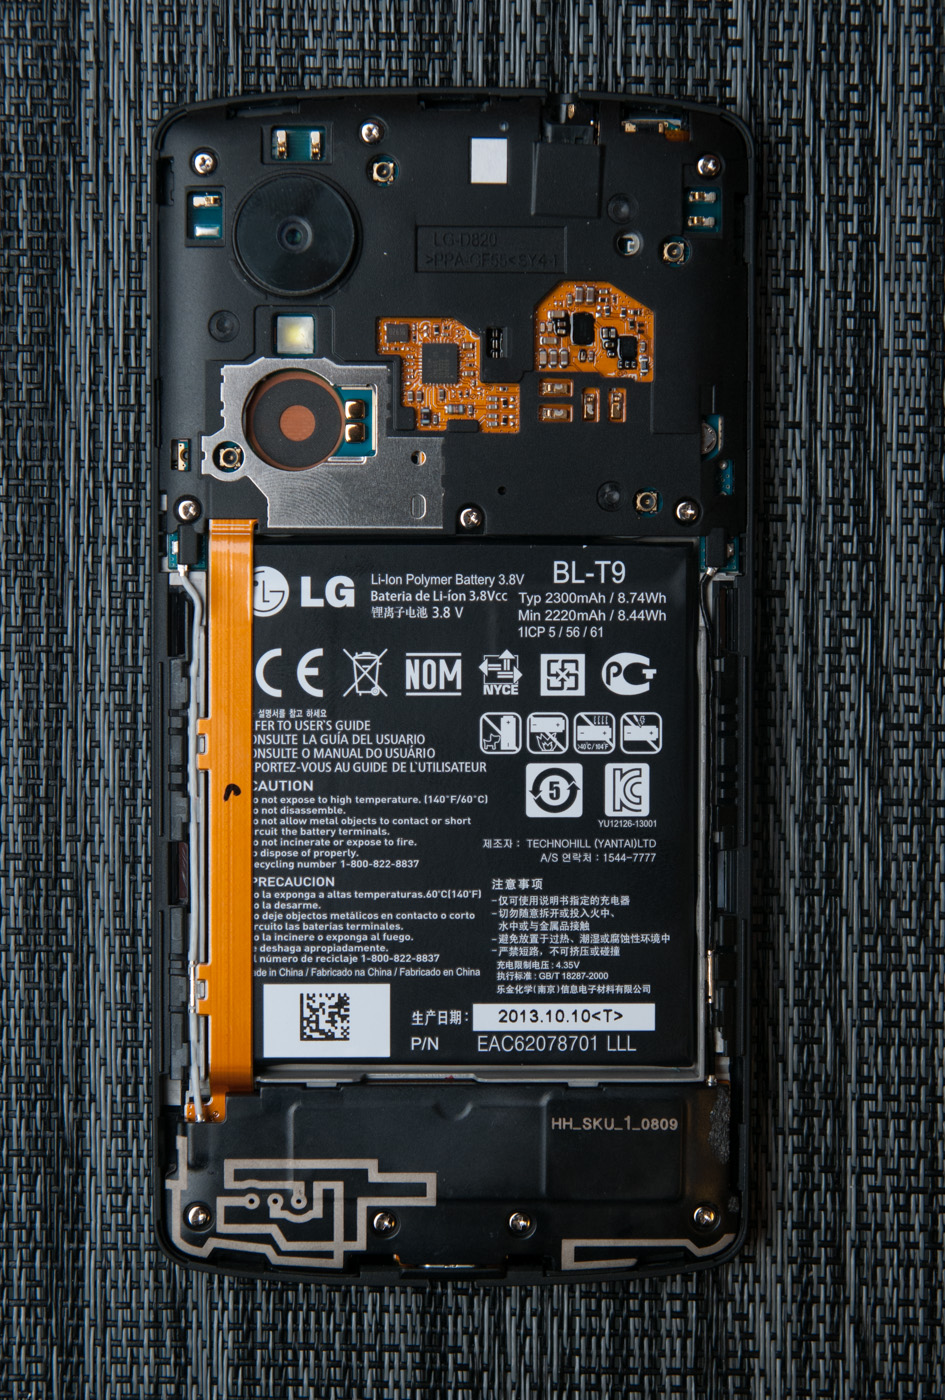 Pasos para reemplazar la batera Nexus 5